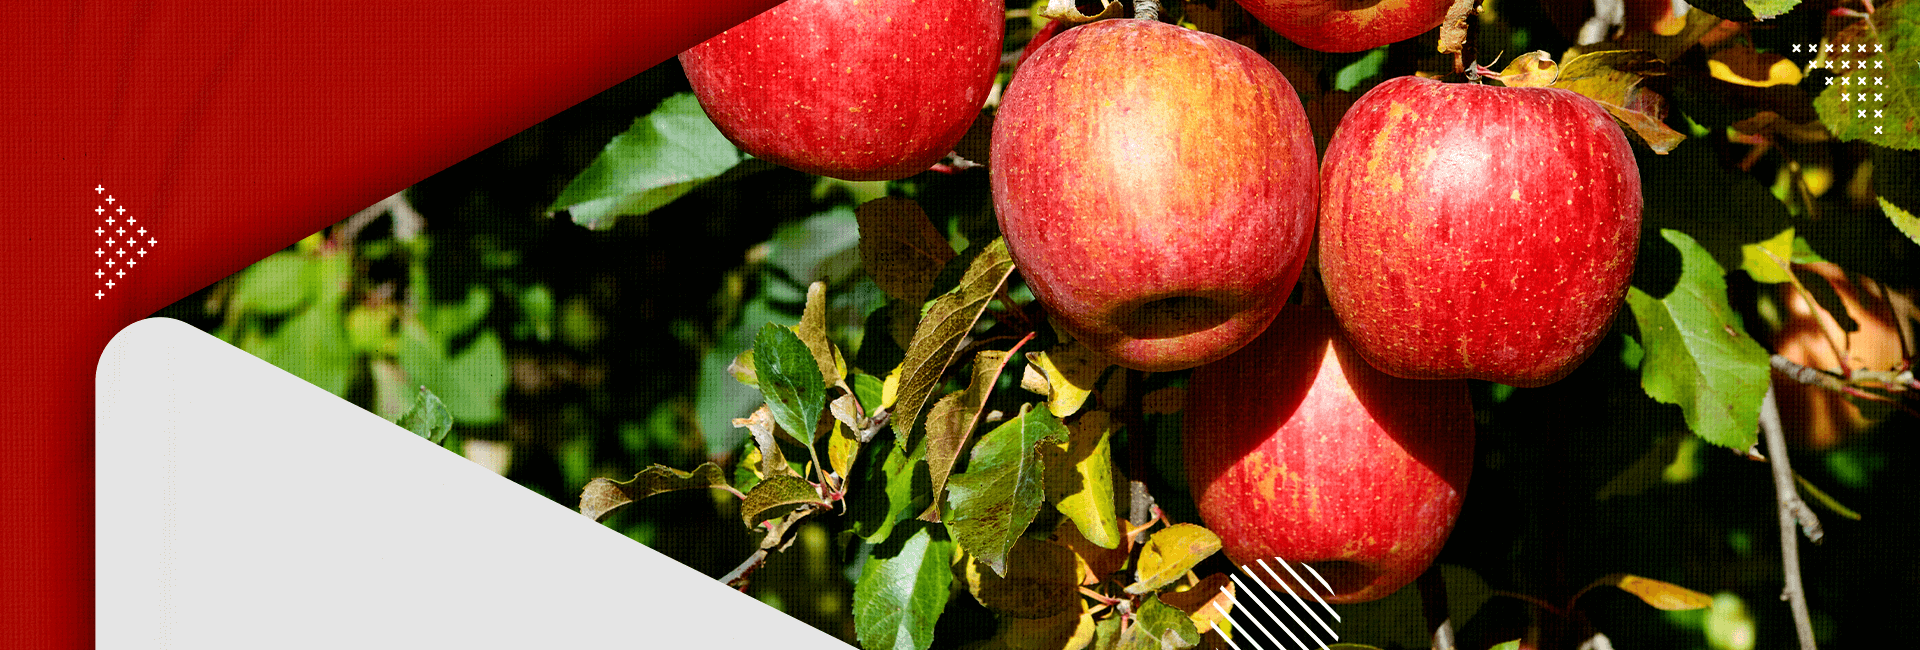 Temporada da maçã propicia turismo de experiência na serra catarinense